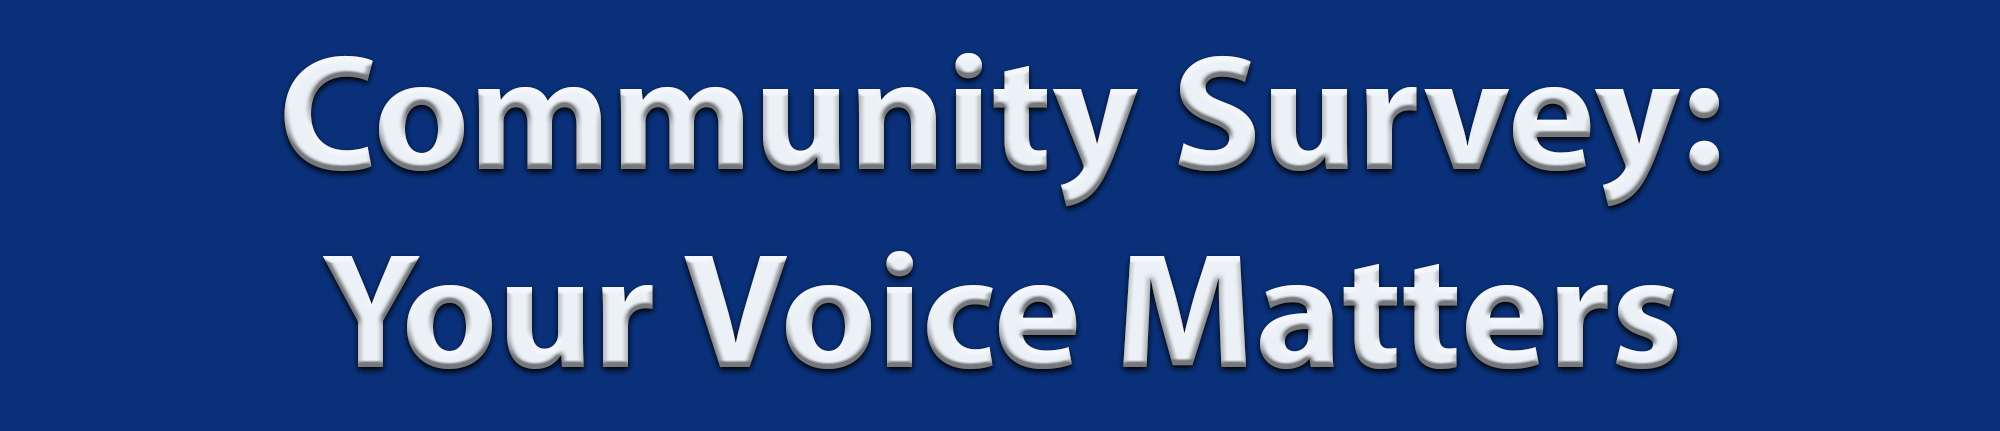 Community Survey: Your Voice Matters